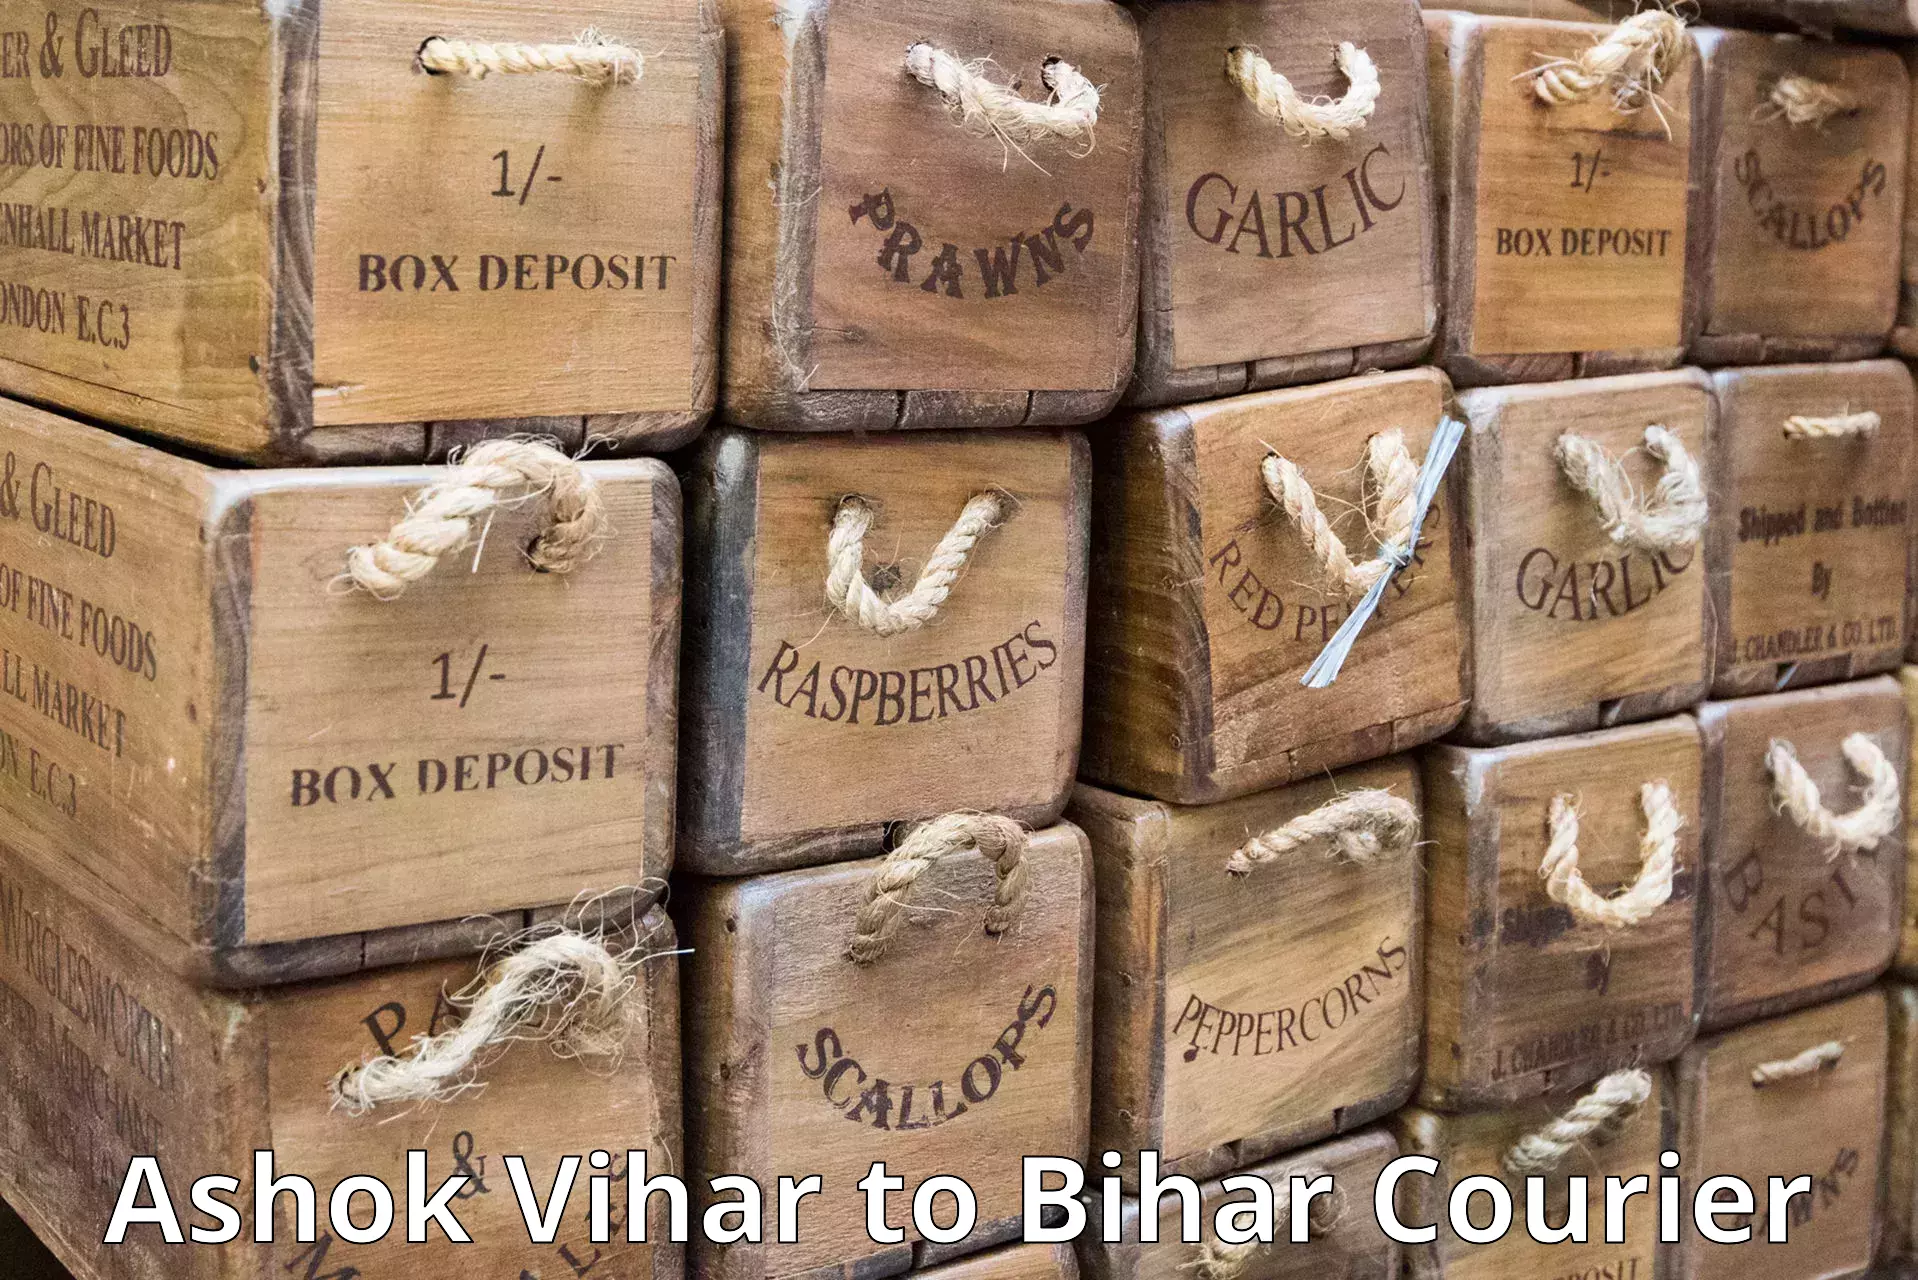 Versatile courier offerings Ashok Vihar to Mahaddipur